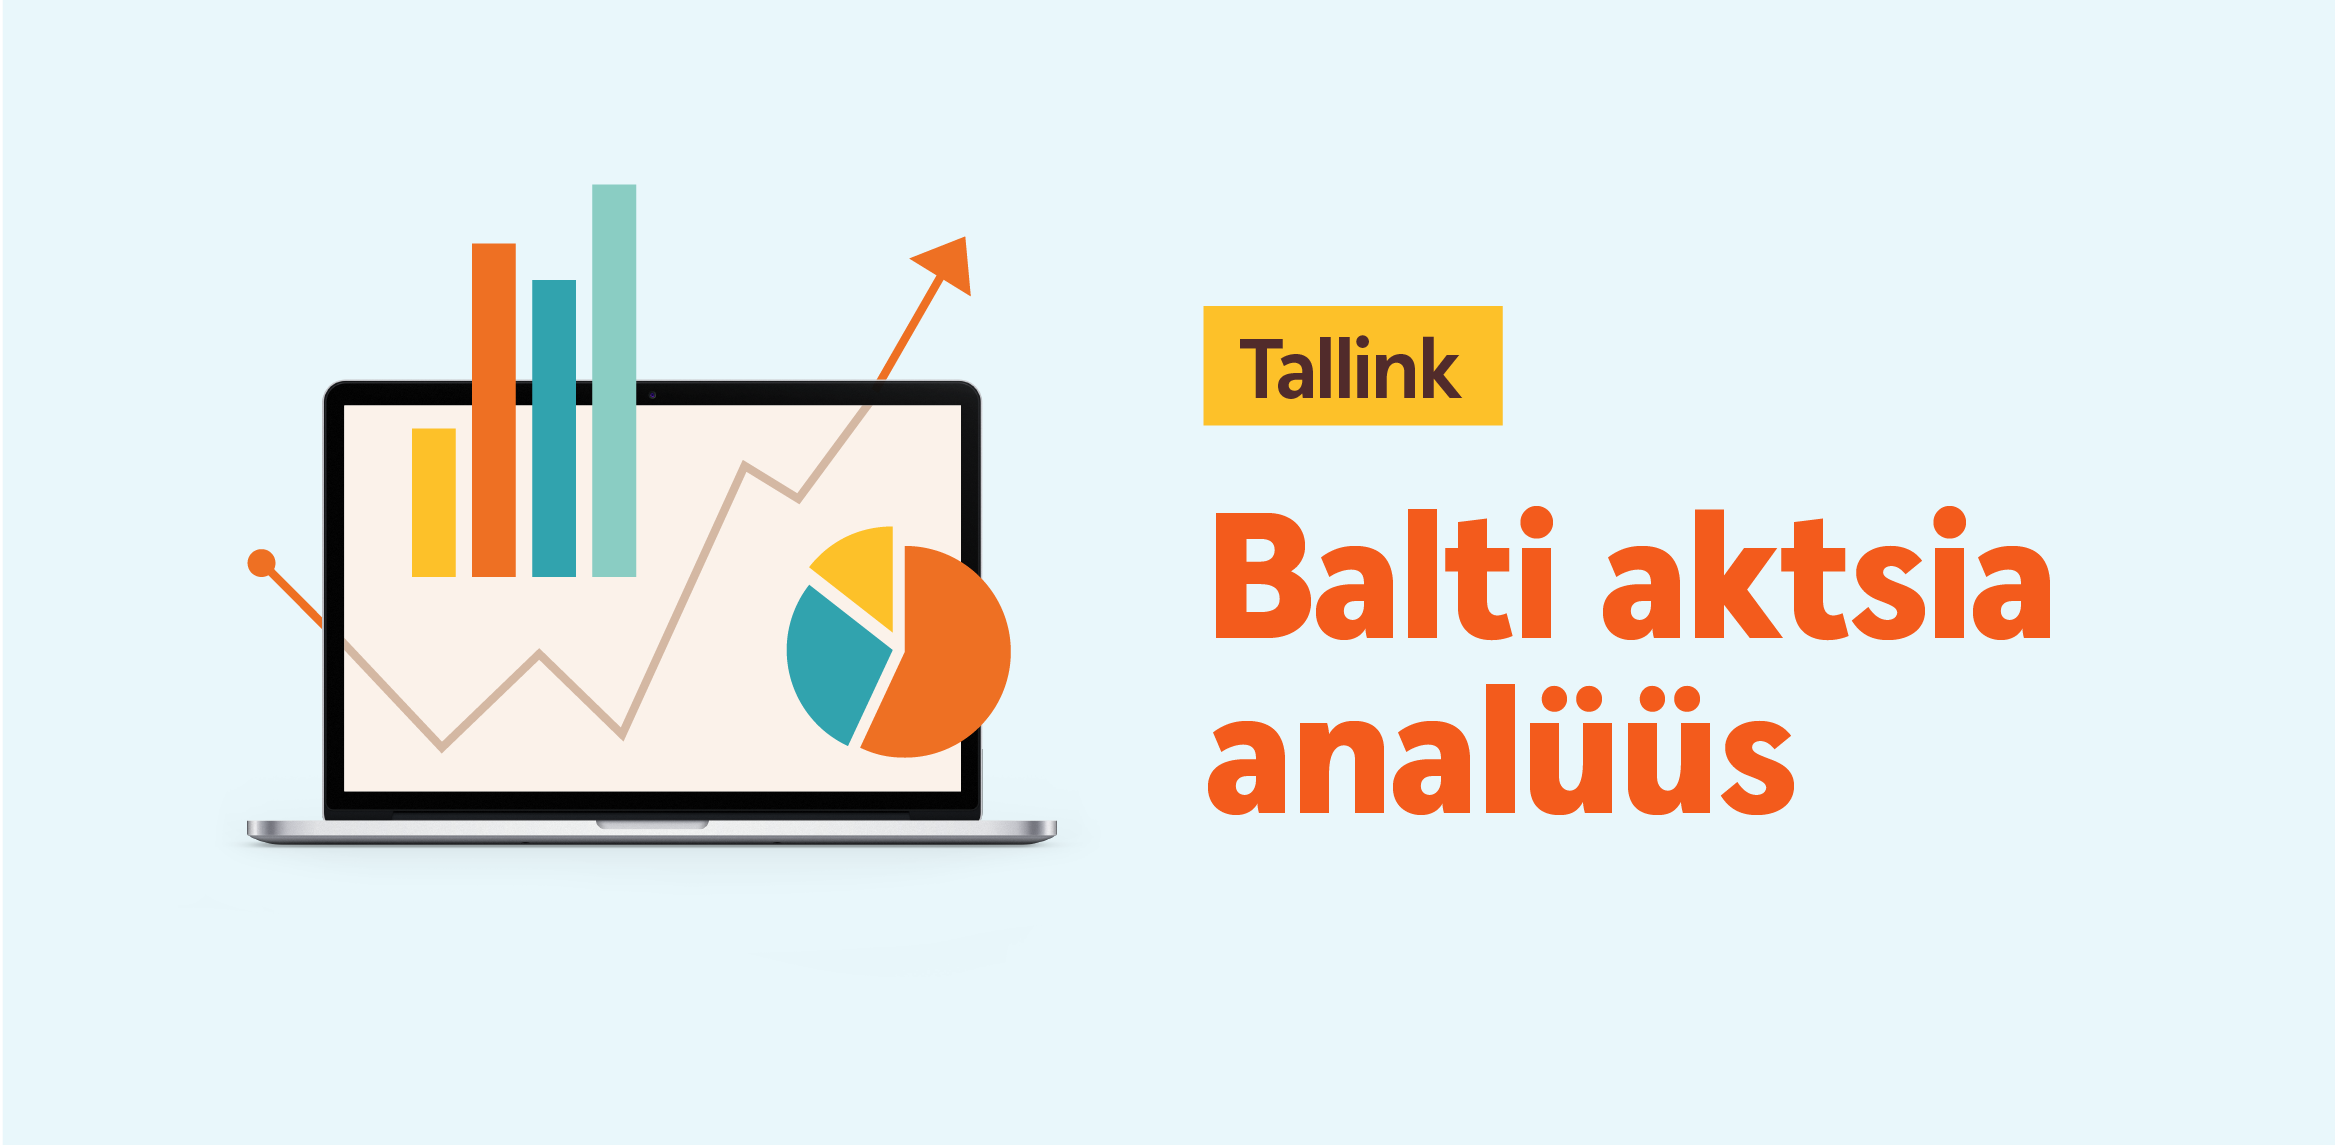 Kulude kasv esimeses kvartalis vähendas Tallinki müügiefektiivsust